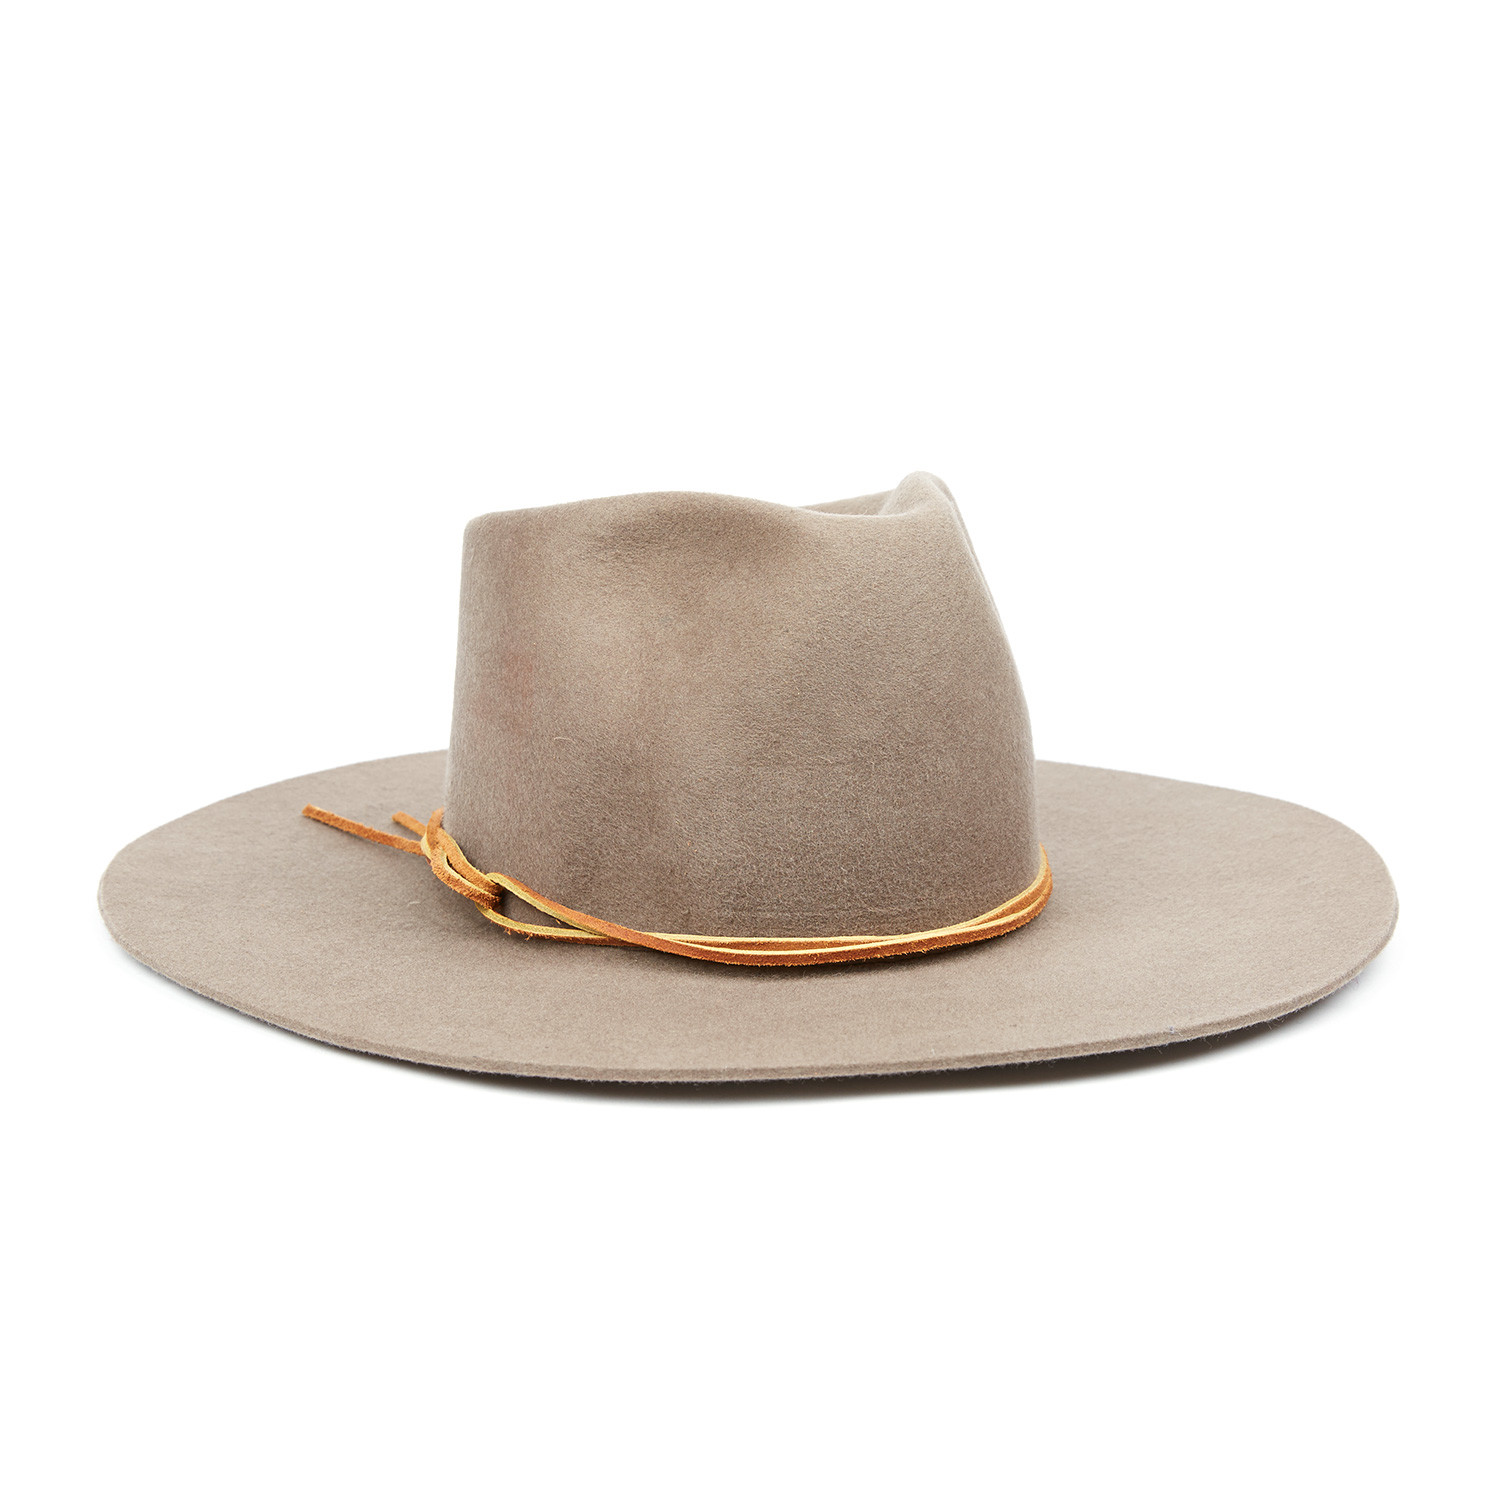 Classic Ranchero Cowboy Hat 